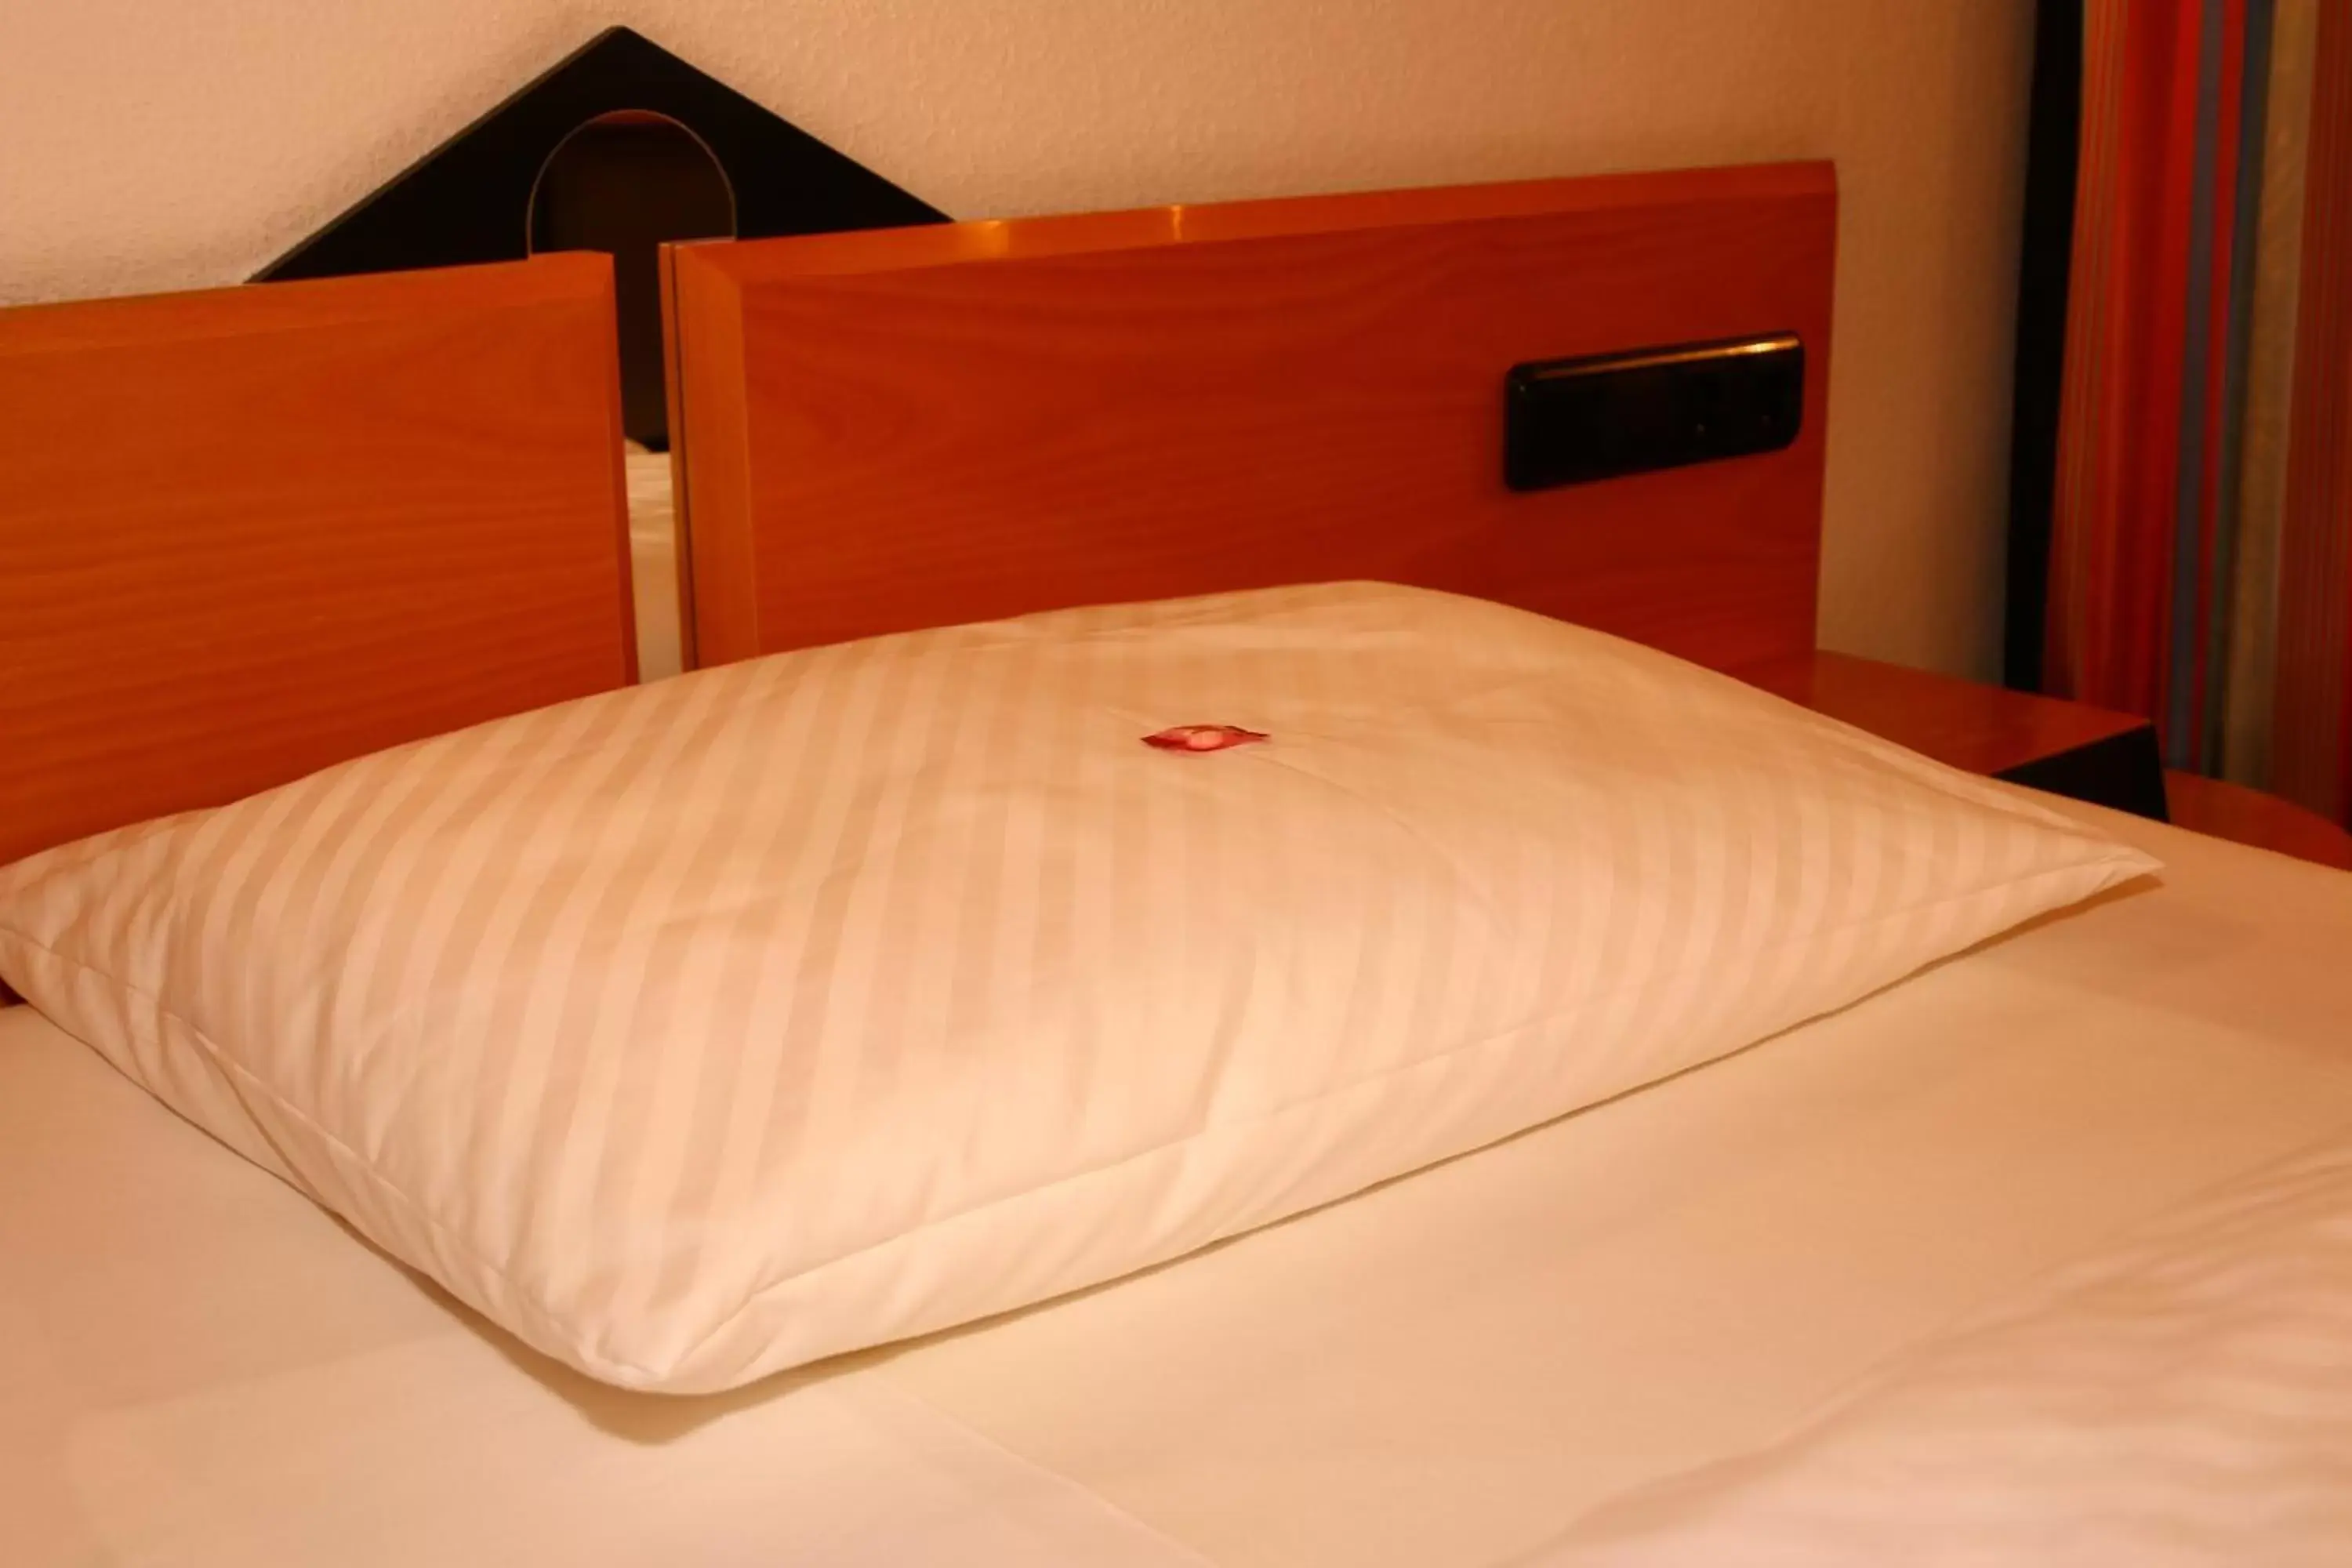 Bed in Hotel am Weiher